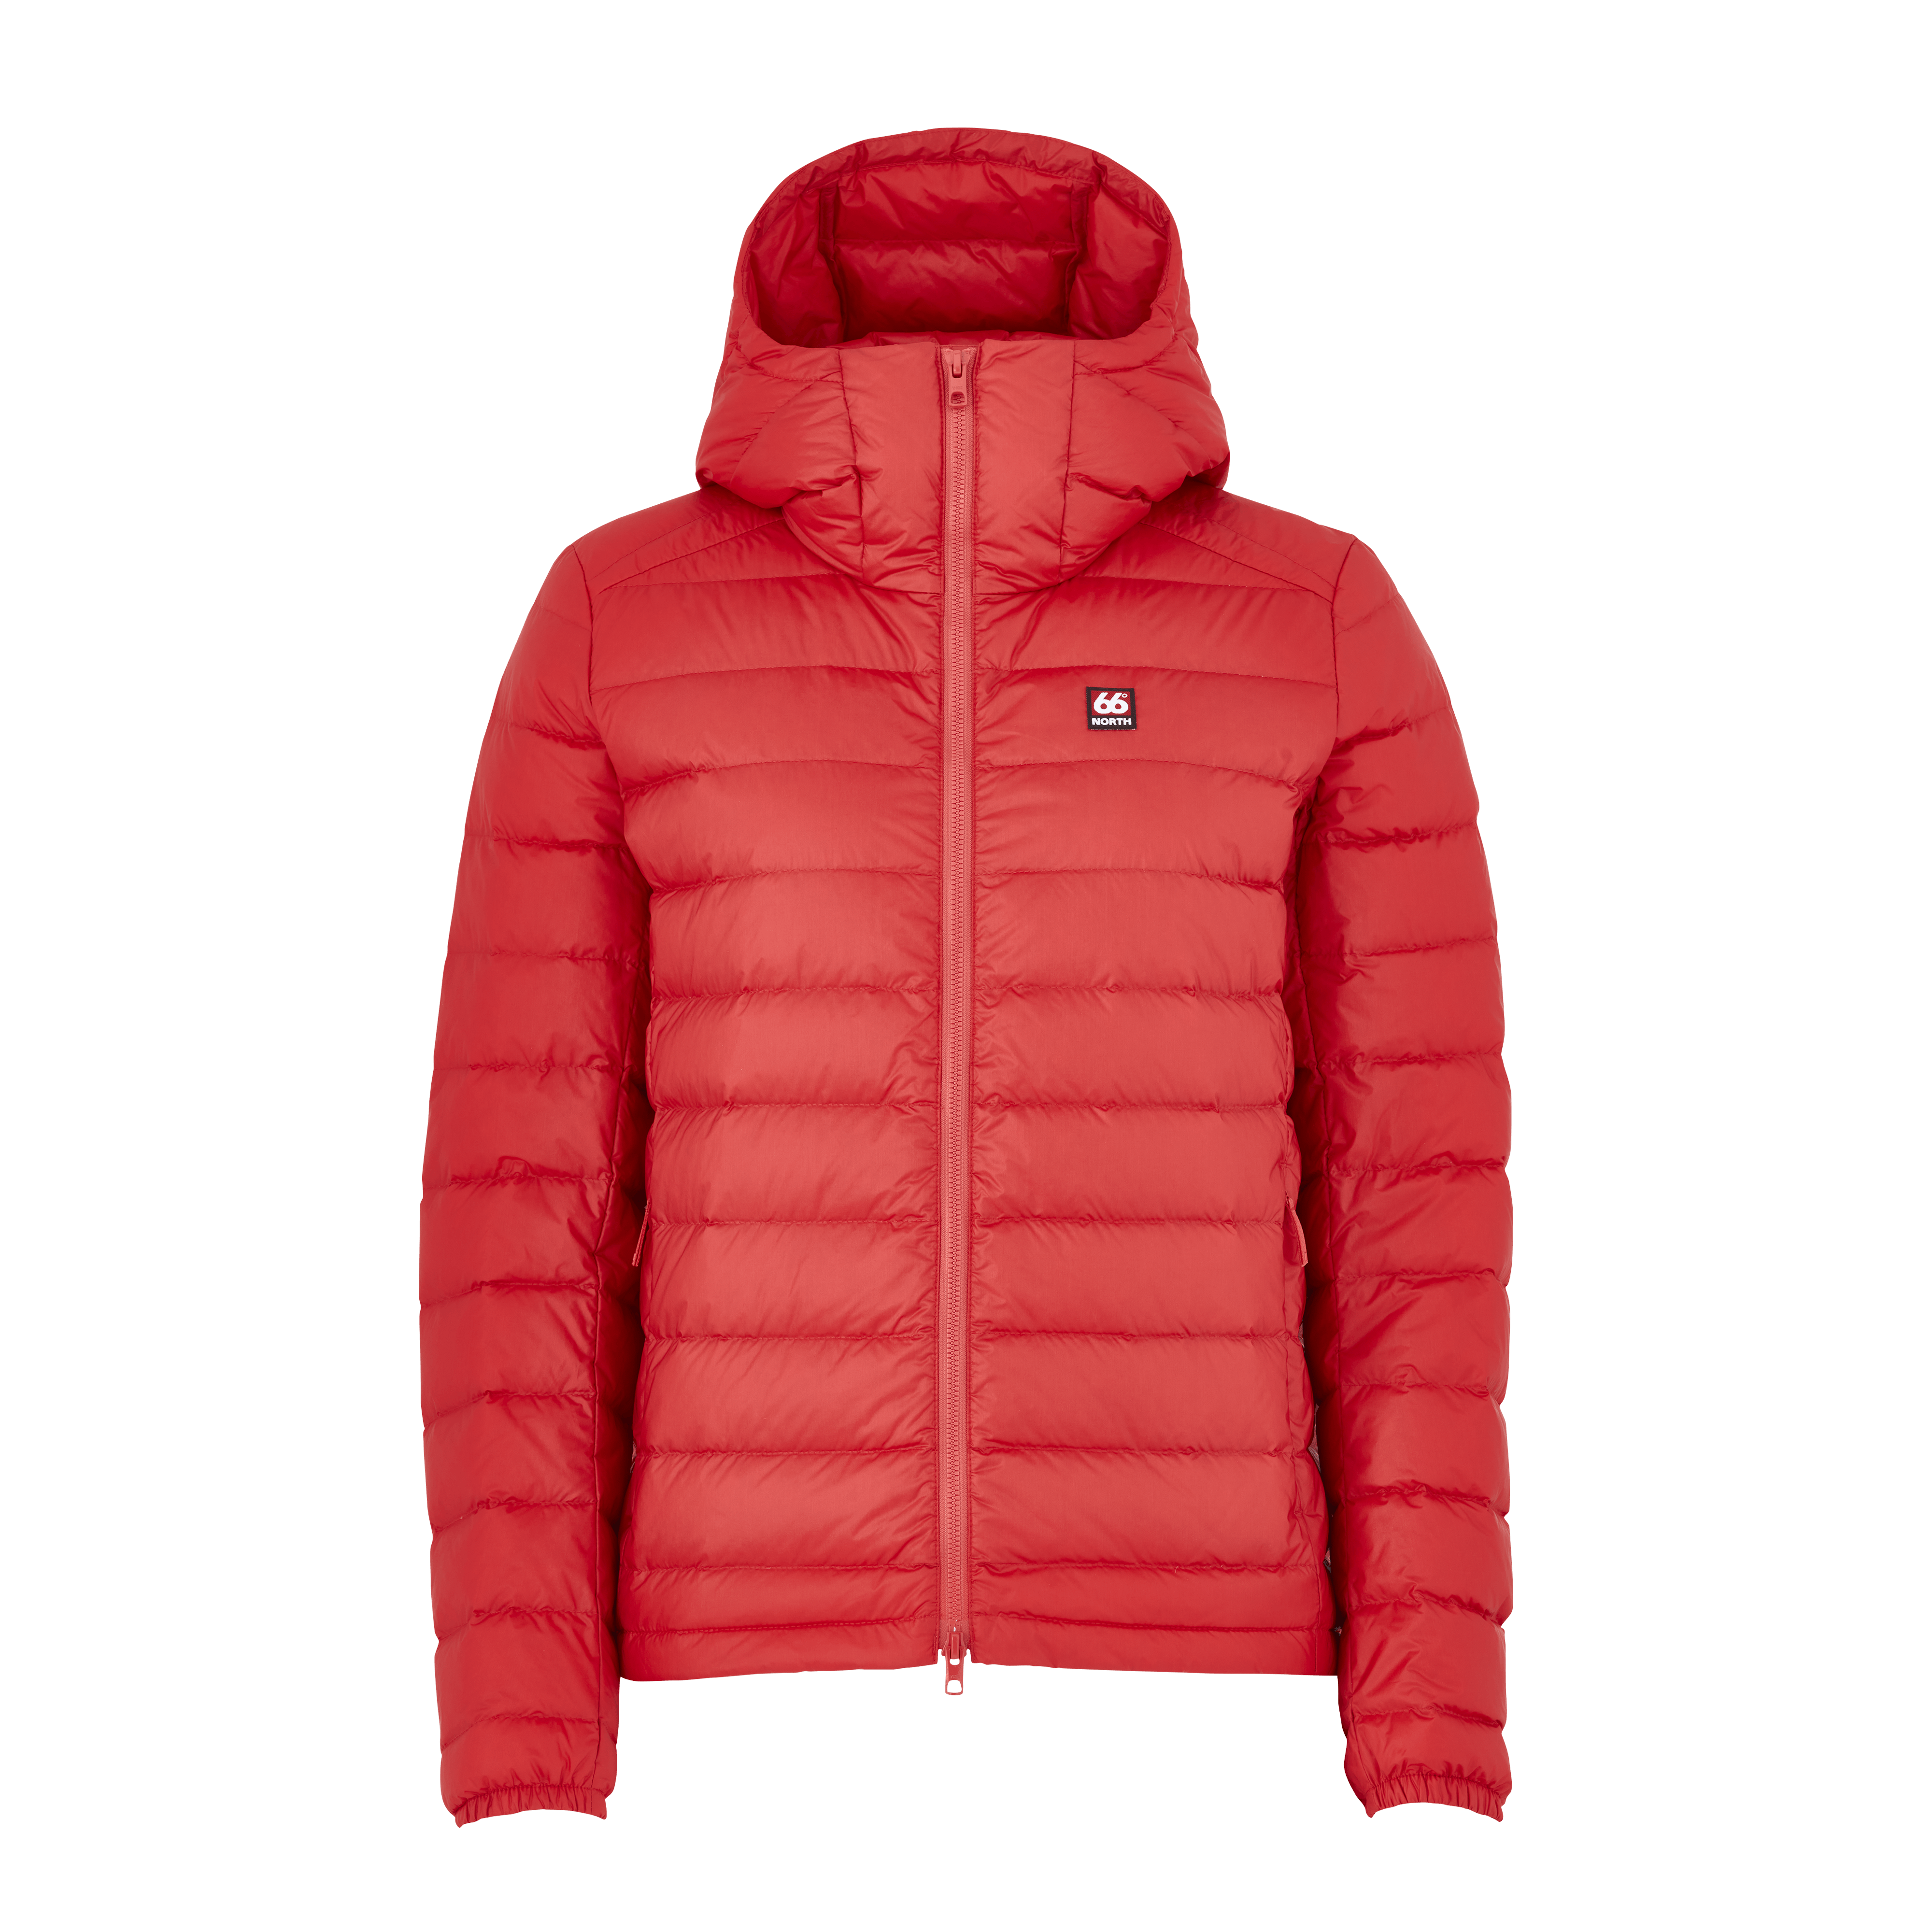 66 North Women's Keilir Jackets & Coats In Red